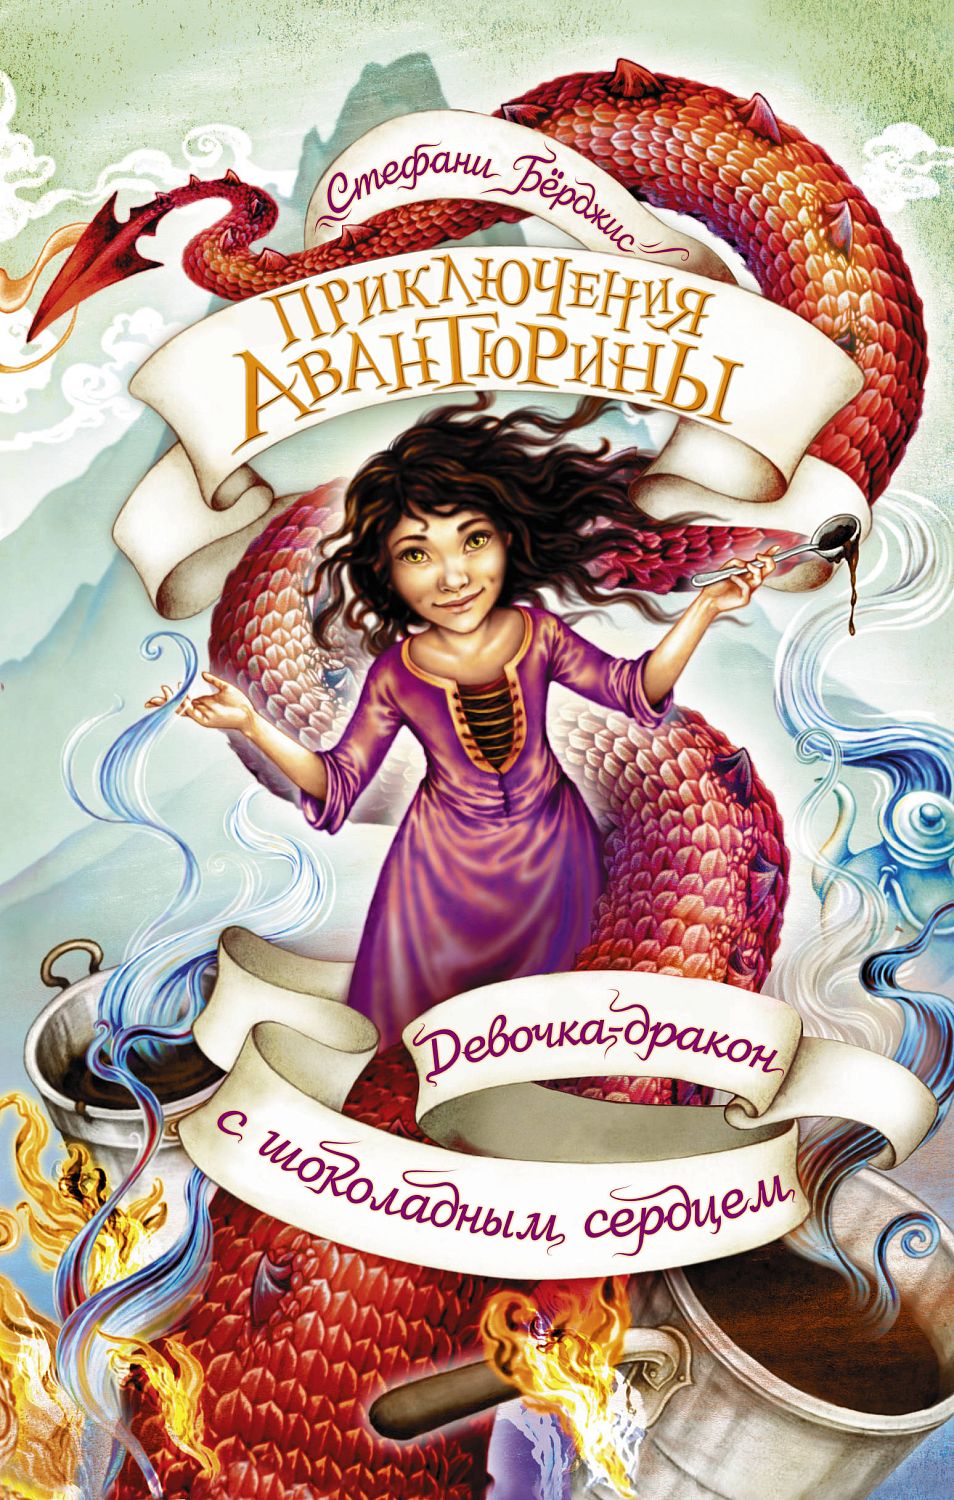 ПриключенияАвантюрины/Девочка-дракон с шоколадным сердцем